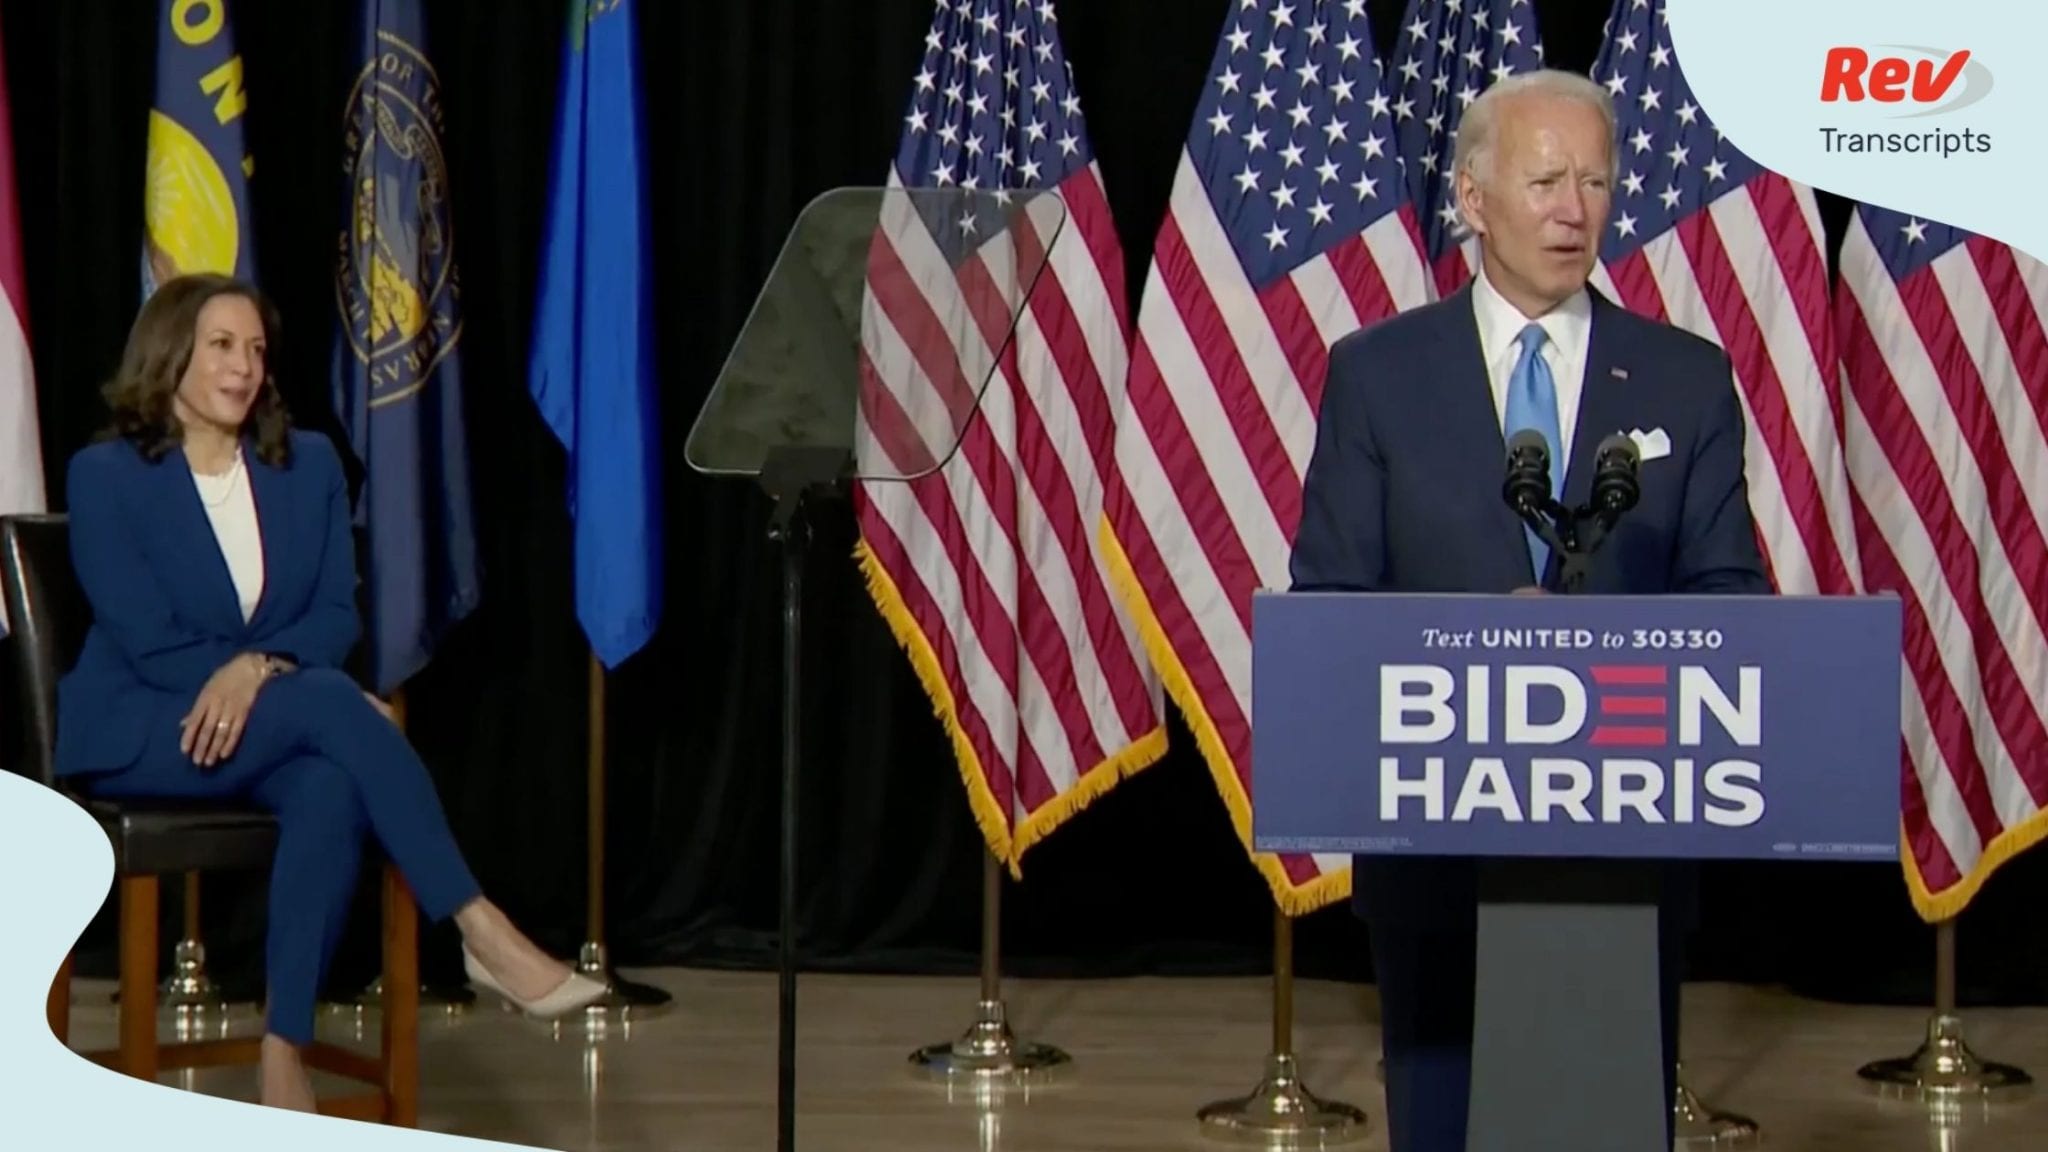 Joe Biden and Kamala Harris Speech Transcript August 12: First Campaign Event as Running Mates